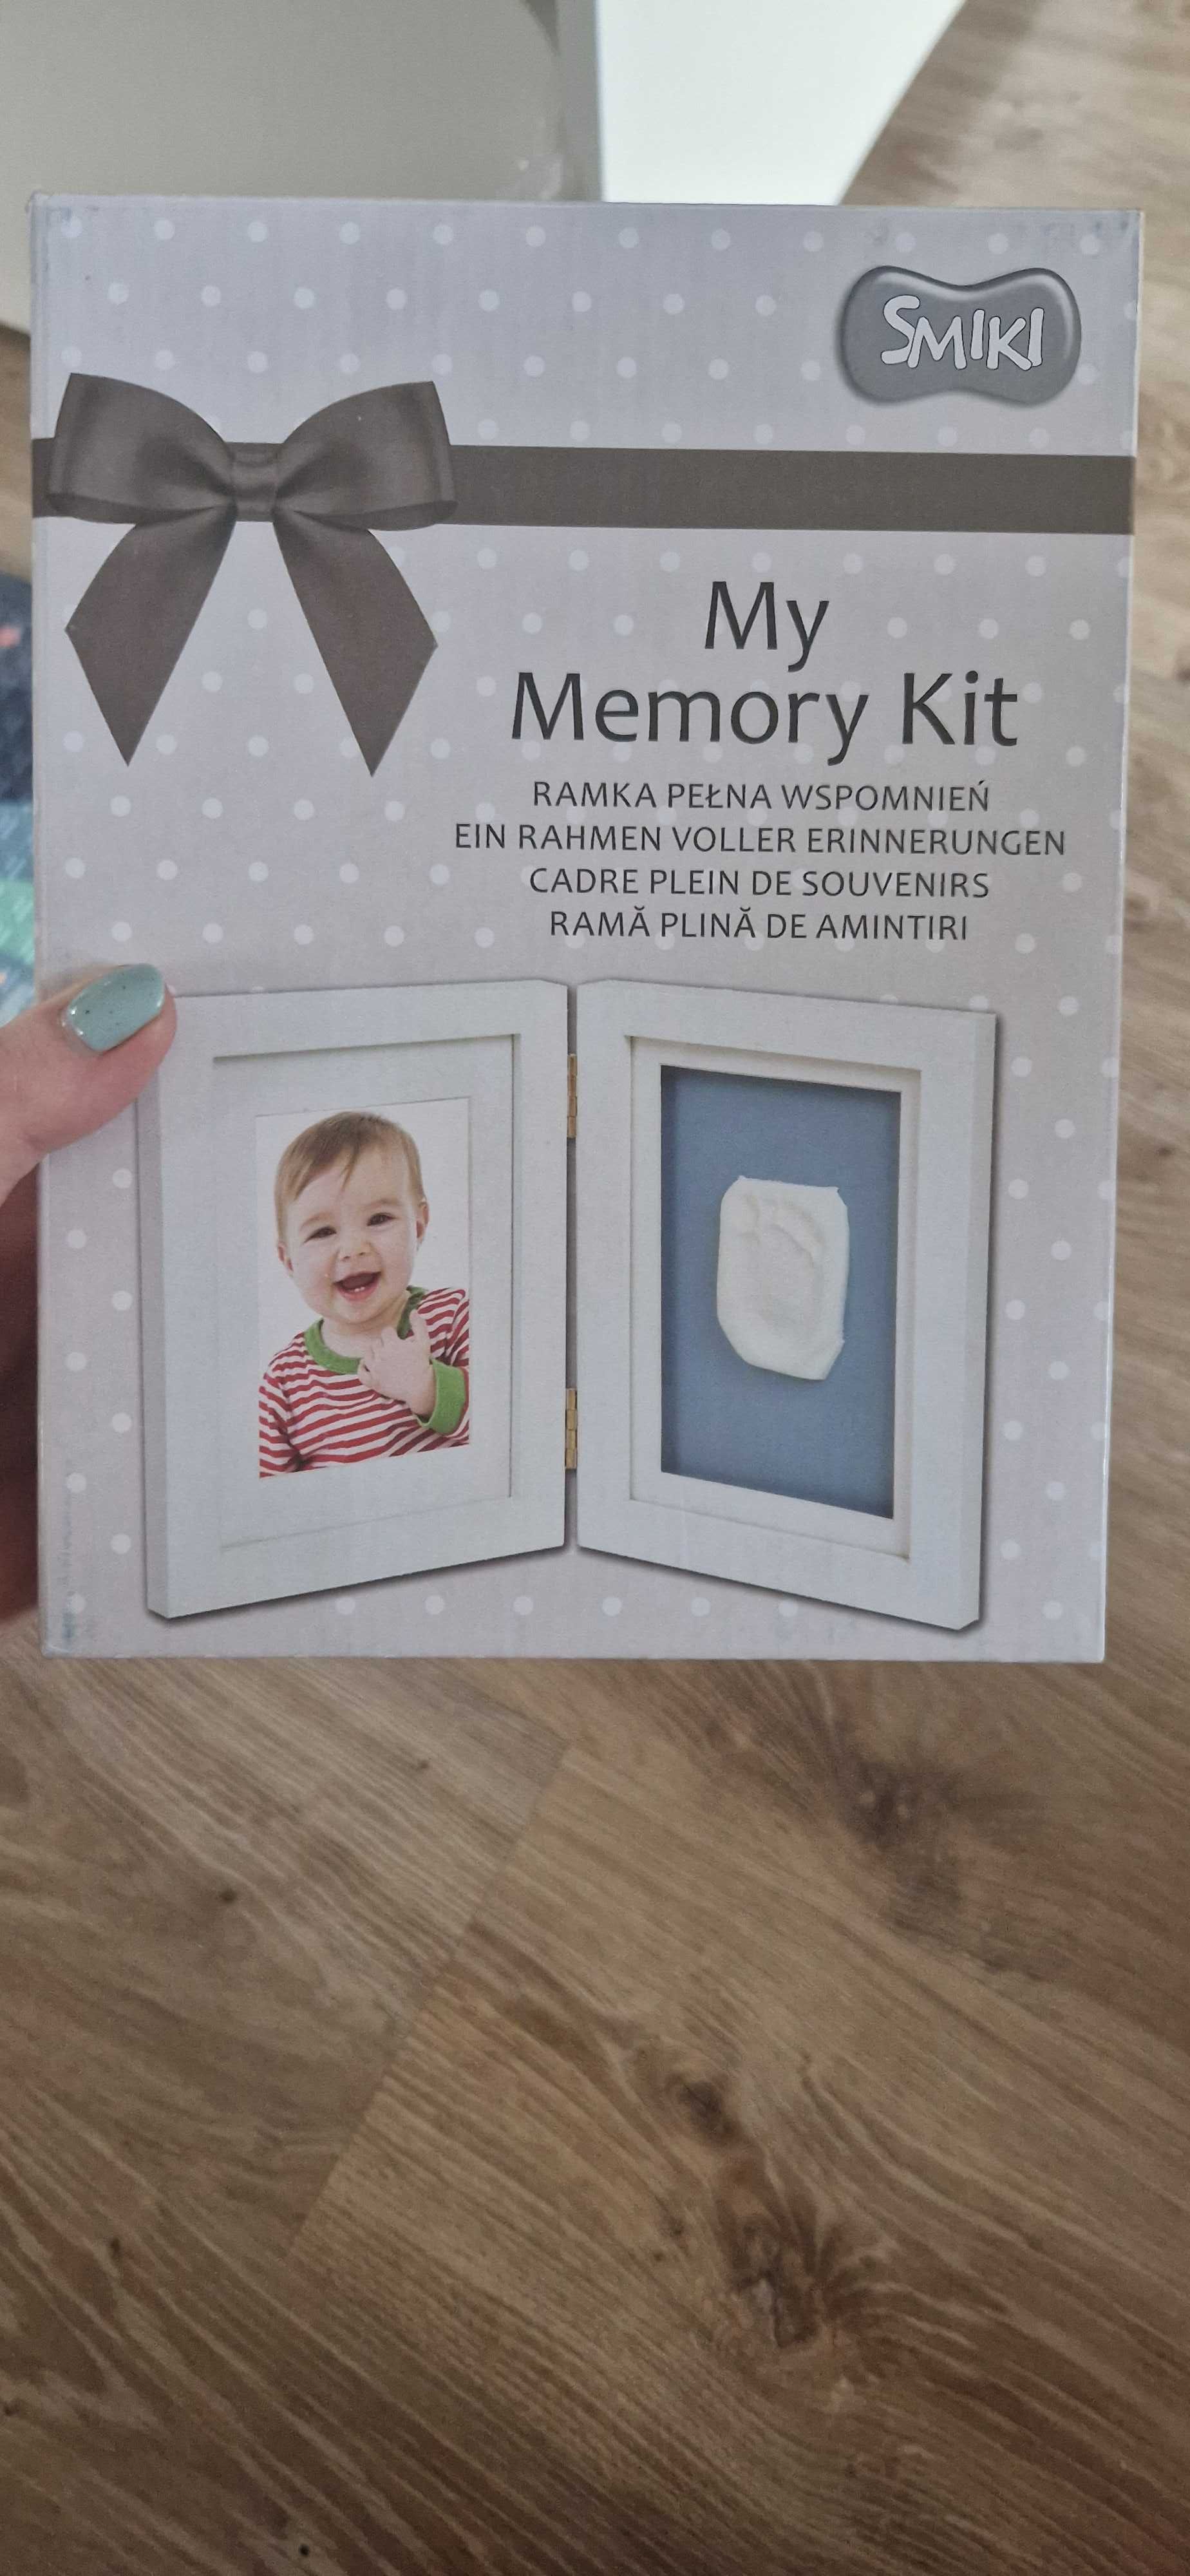 Memory kit nowy odlew gipsowy dziecka ramka stópka rączka zdjęcia